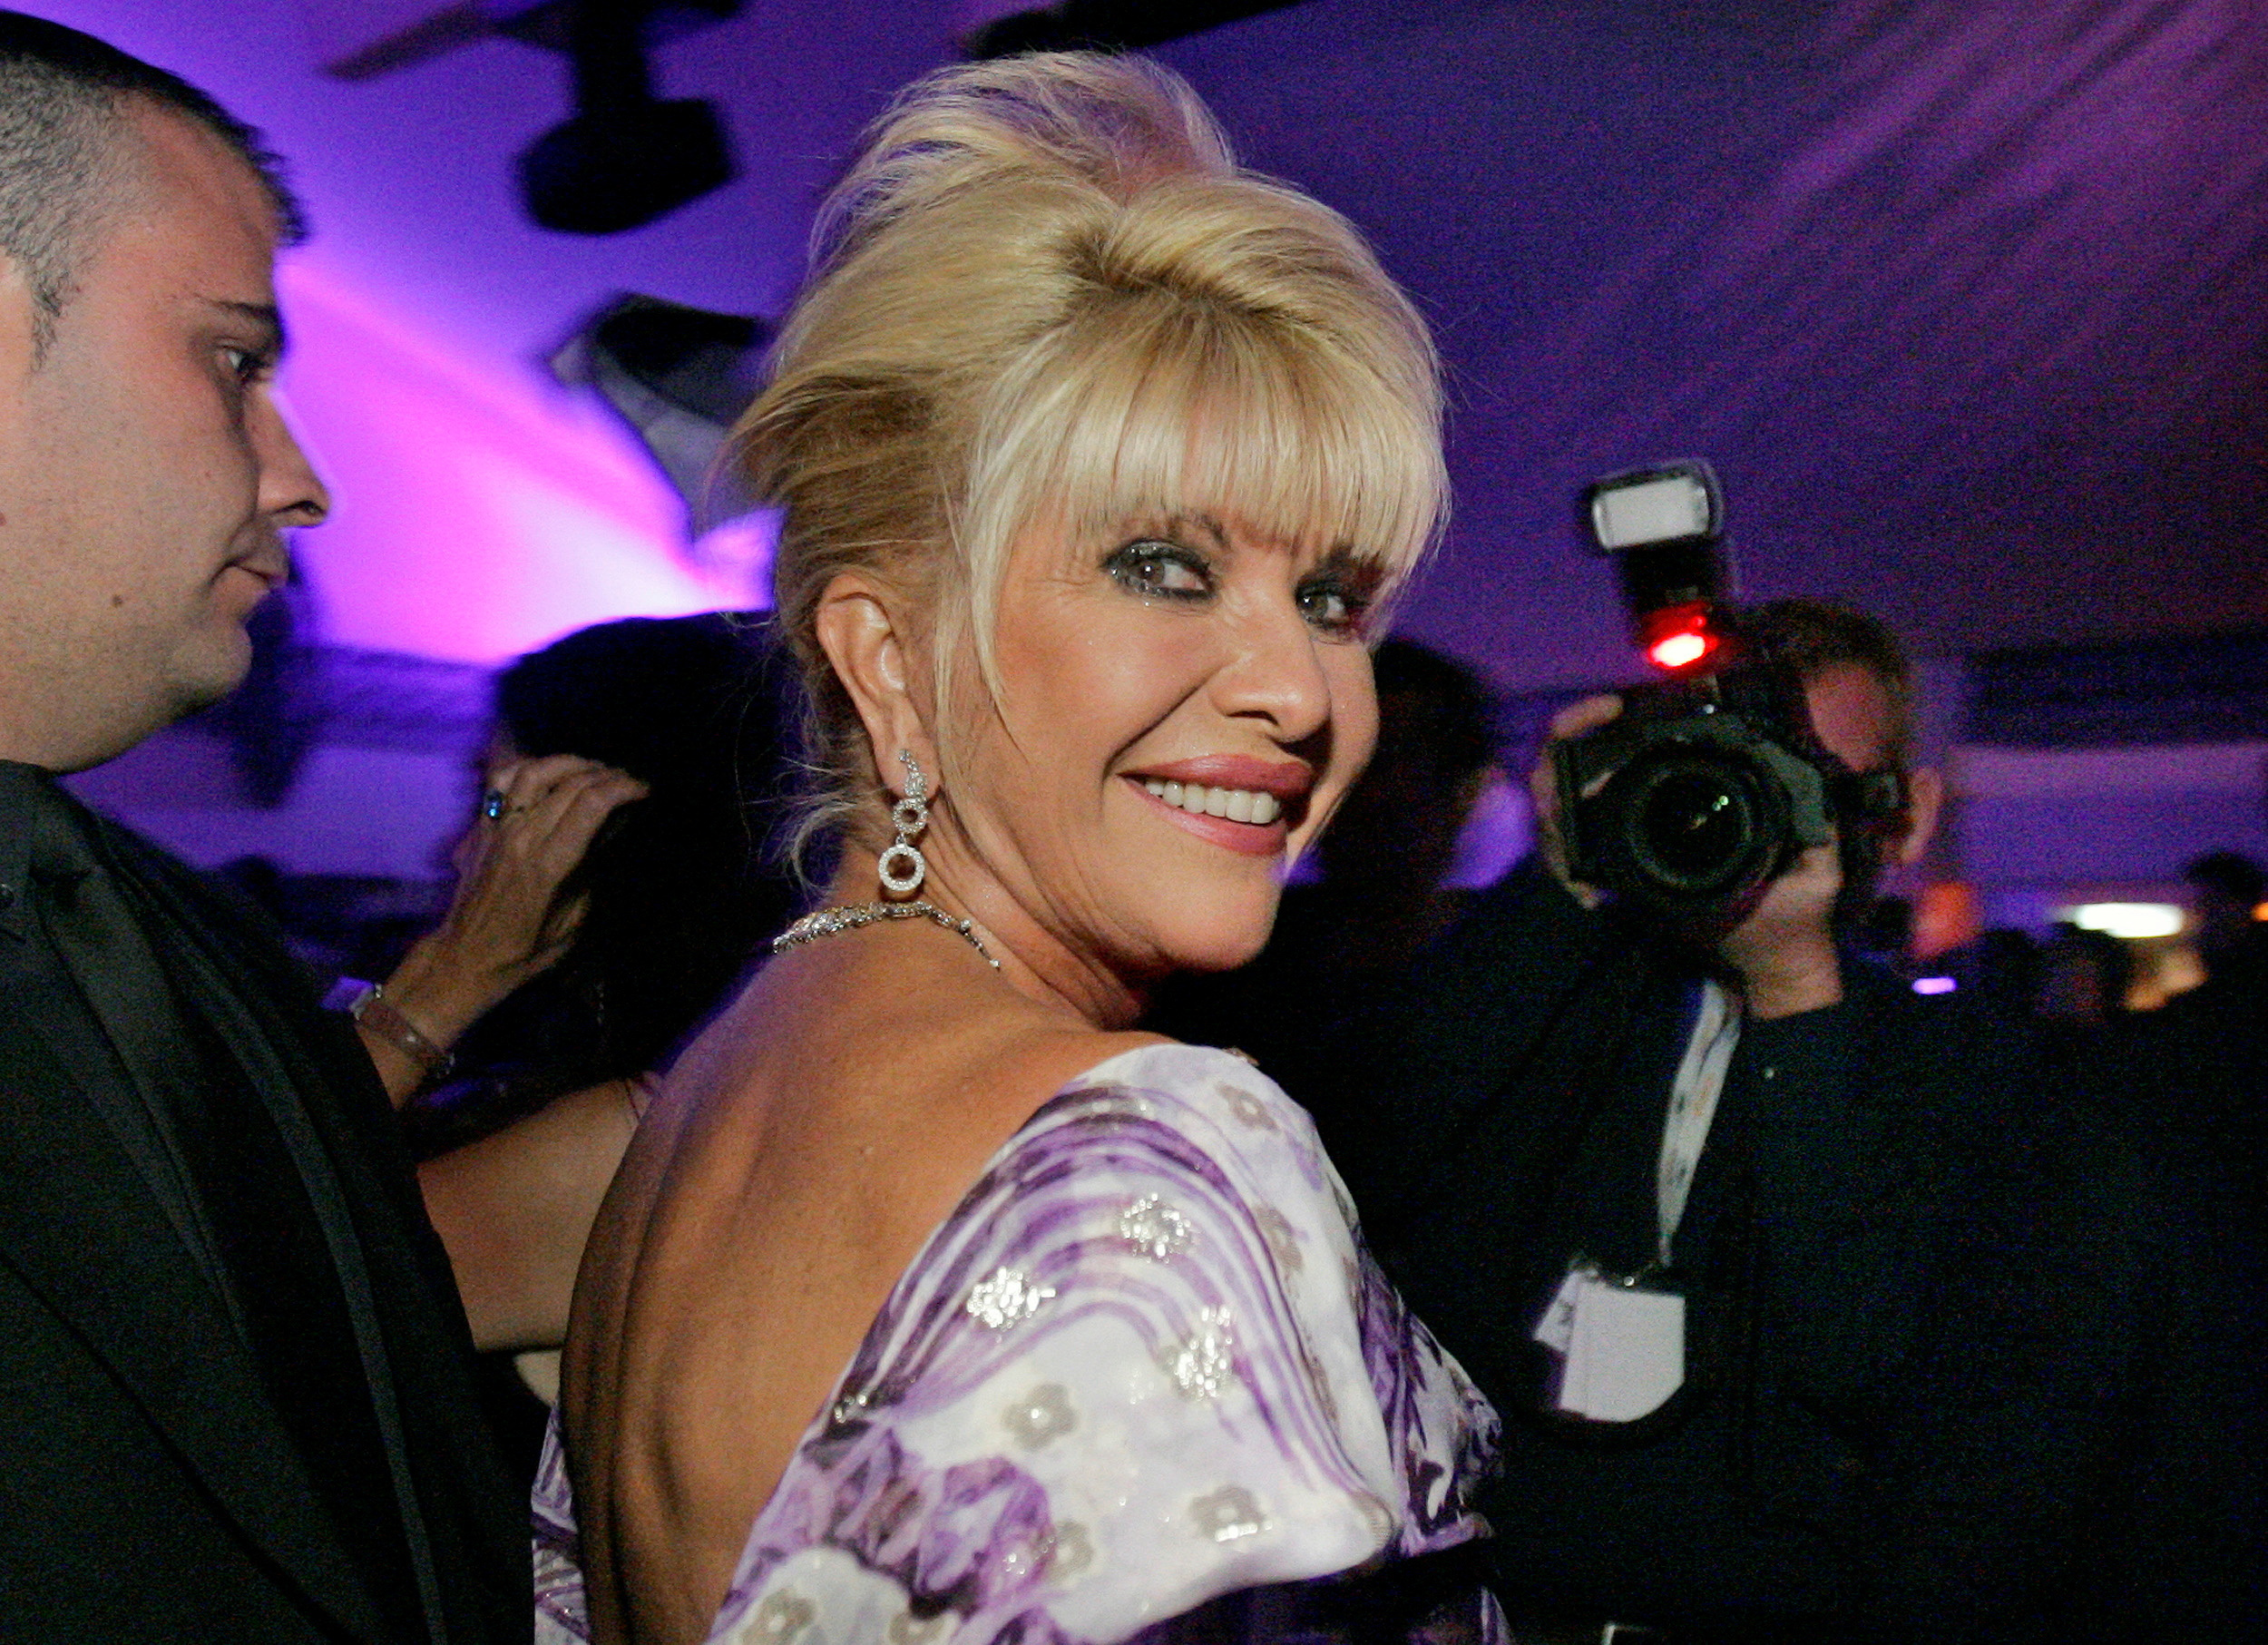 Foto de archivo: Ivana Trump en Cannes el 24 de mayo de 2006 (REUTERS/Mario Anzuoni)